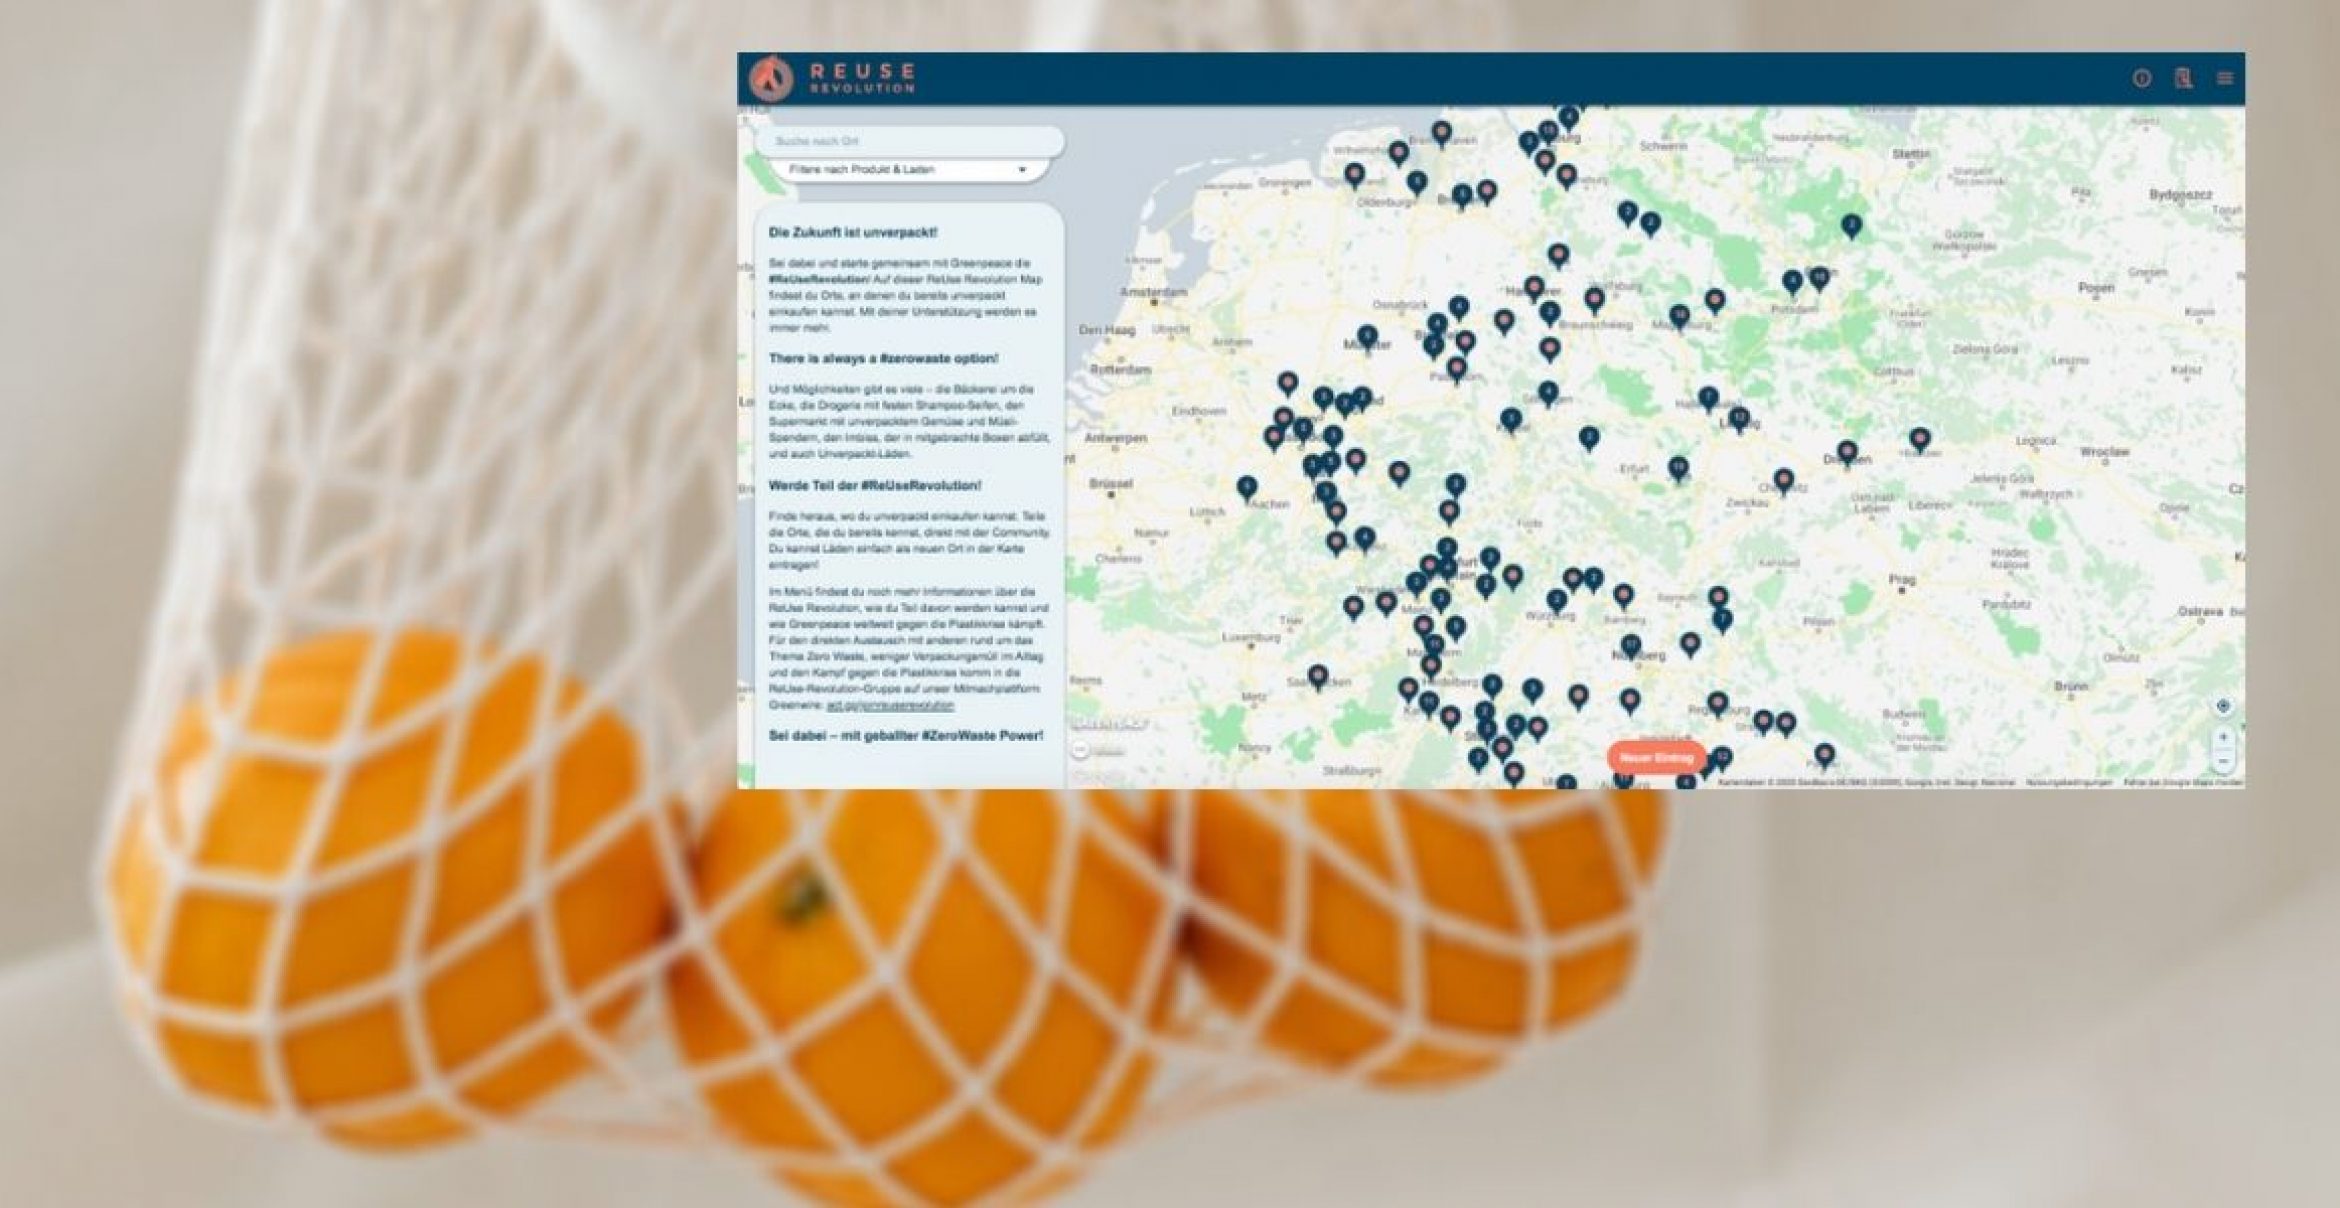 ReUse-Revolution-Map: Diese interaktive Karte zeigt alle Unverpacktläden in Deutschland